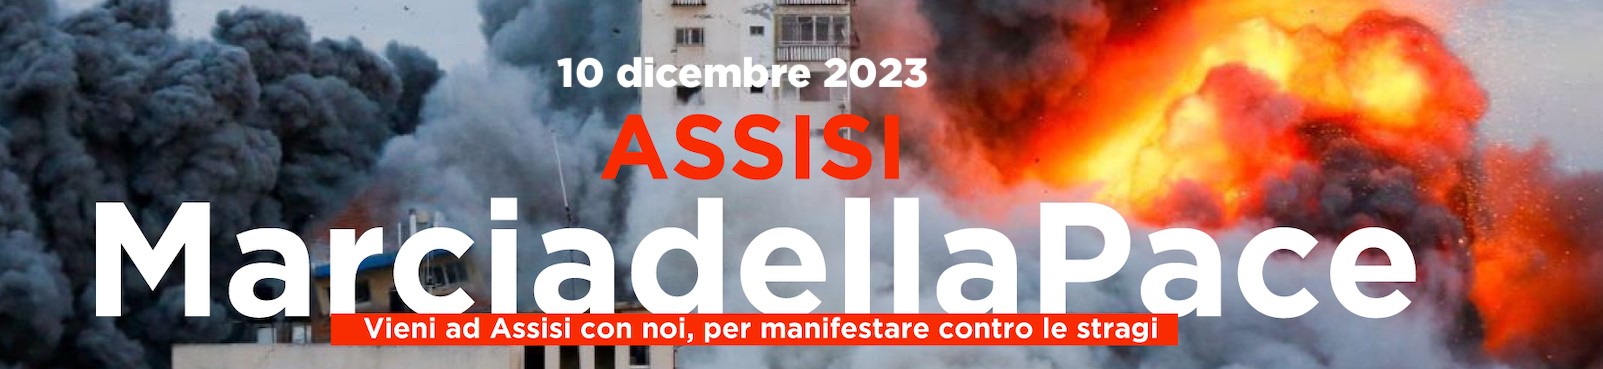 Marcia della pace e della fraternità Assisi si svolgerà domenica 10 dicembre 2023 - grafica